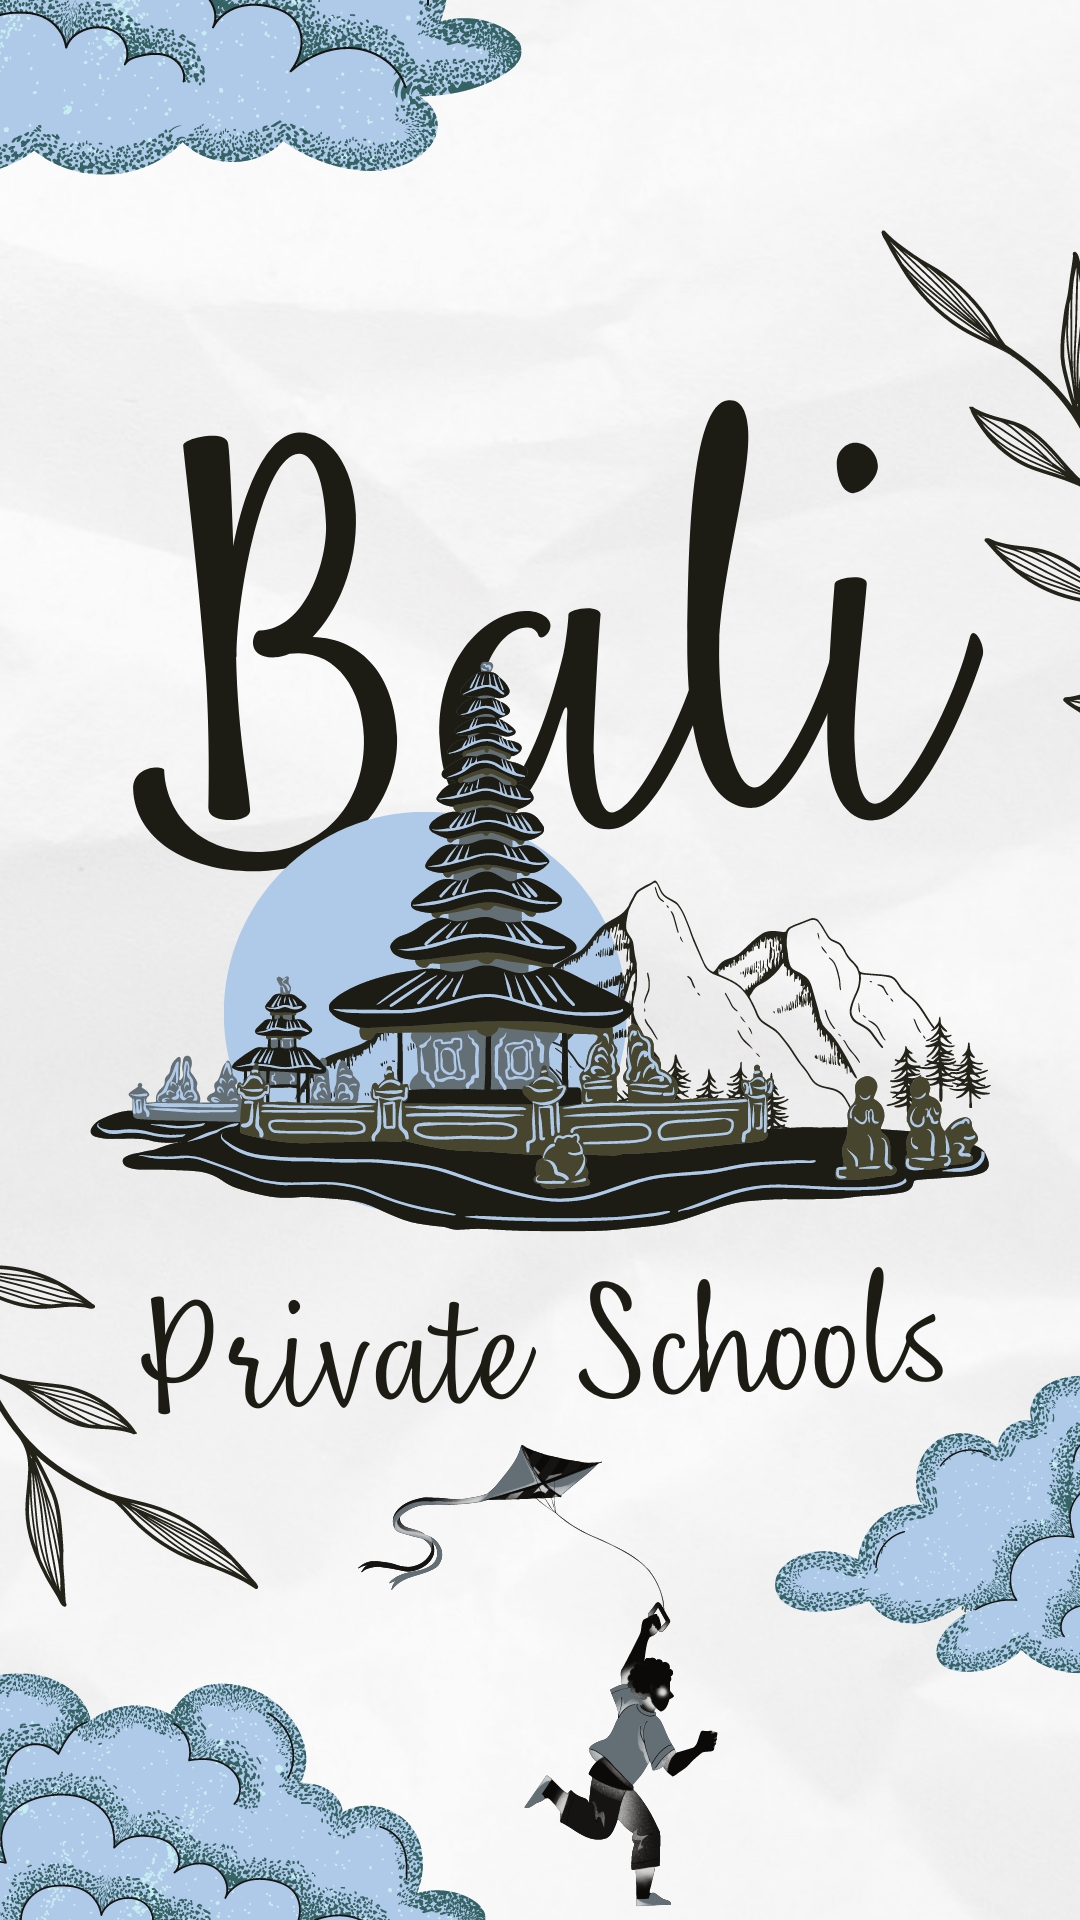 Private Schools in Bali